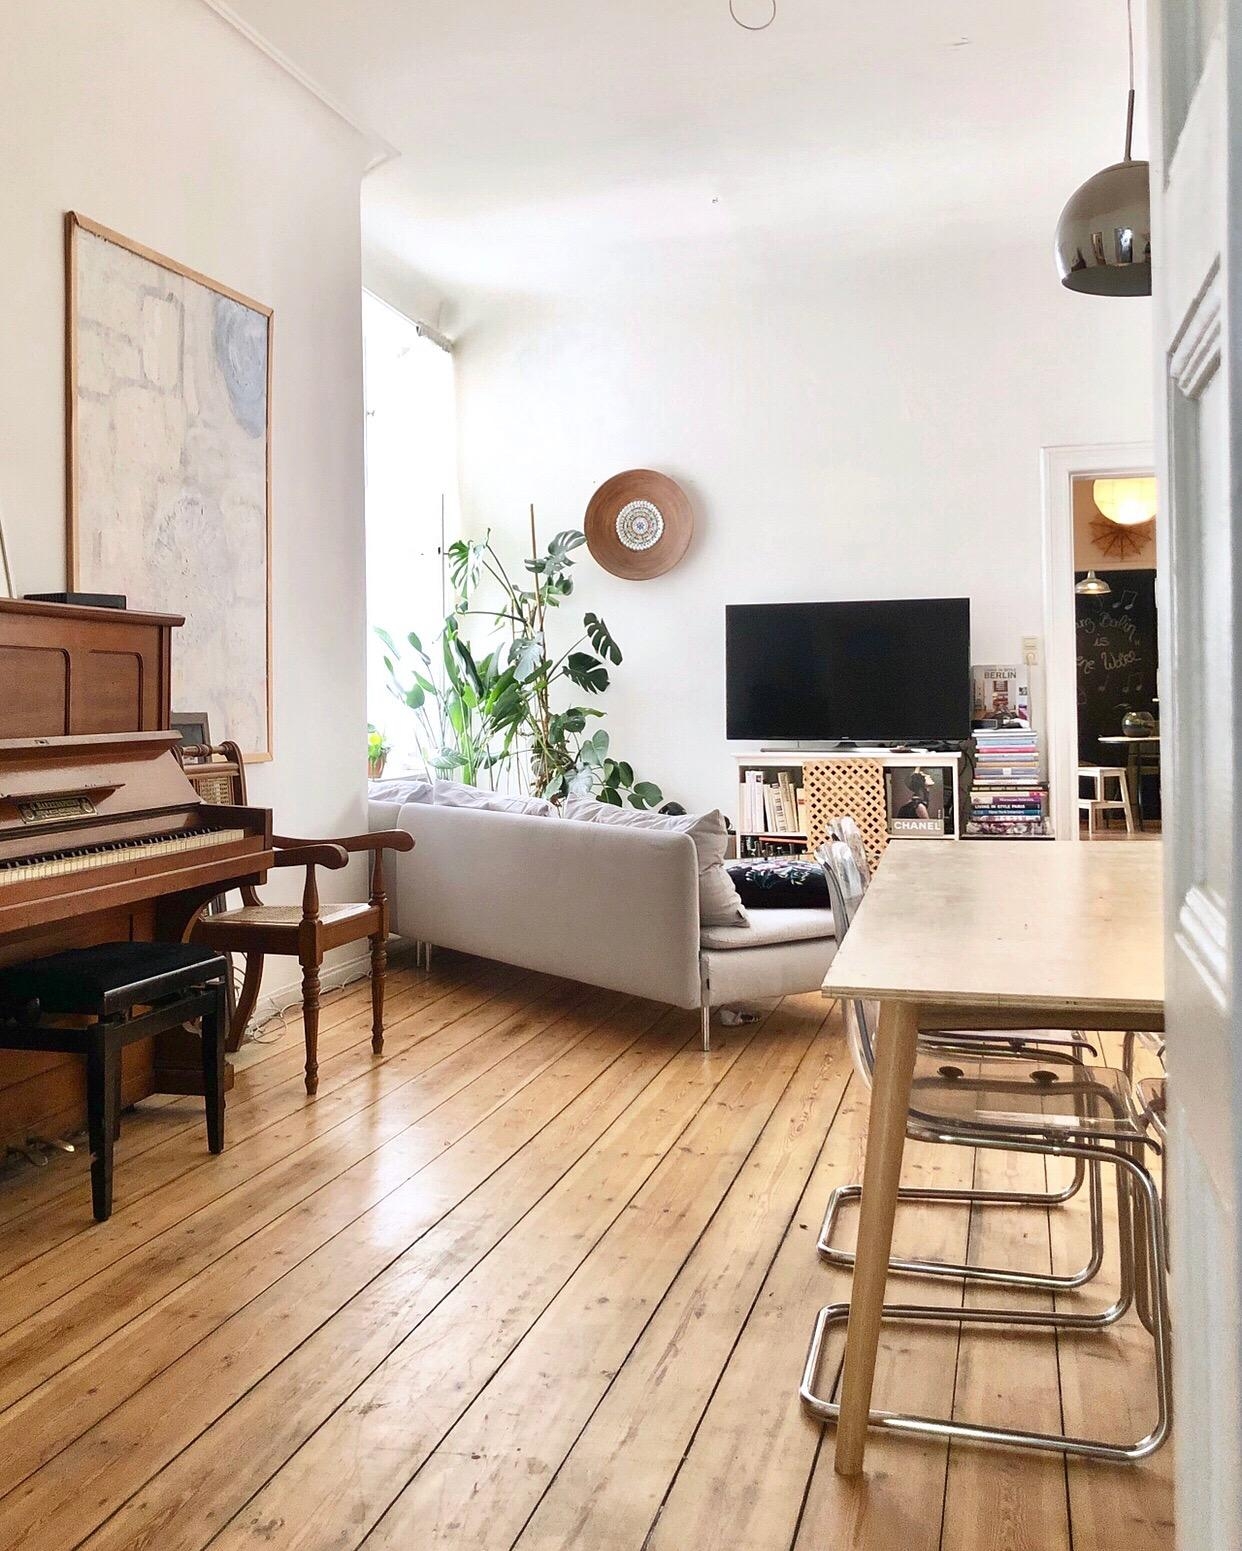 #altbau #holzboden #berlin #dielenboden #klavier #esszimmer #wohnzimmer